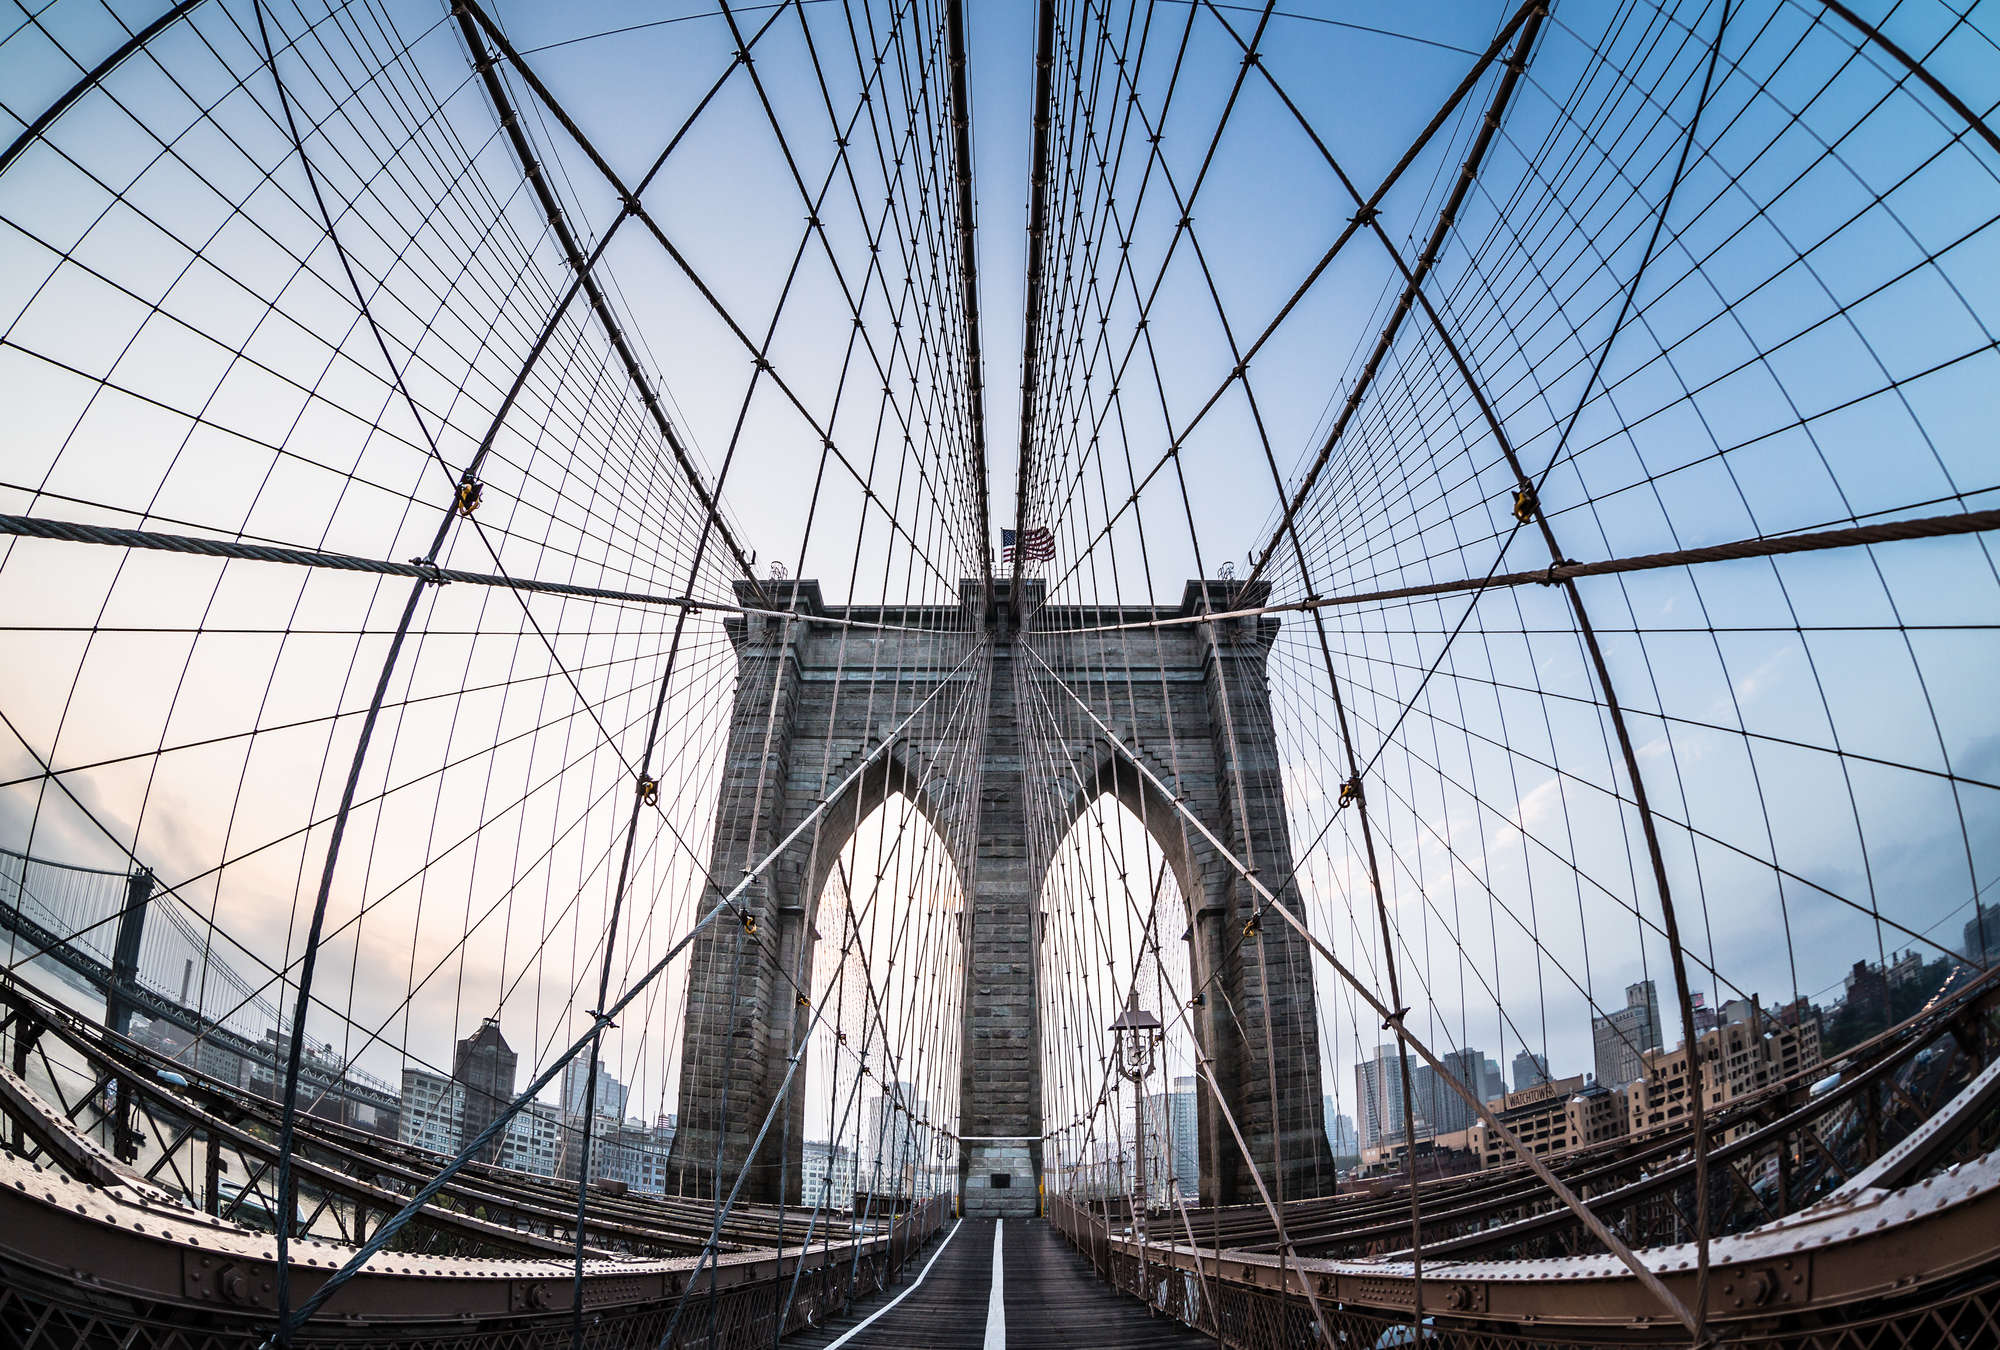             Fototapete Nahaufnahme der Brückenkonstruktion der Brooklyn Bridge
        